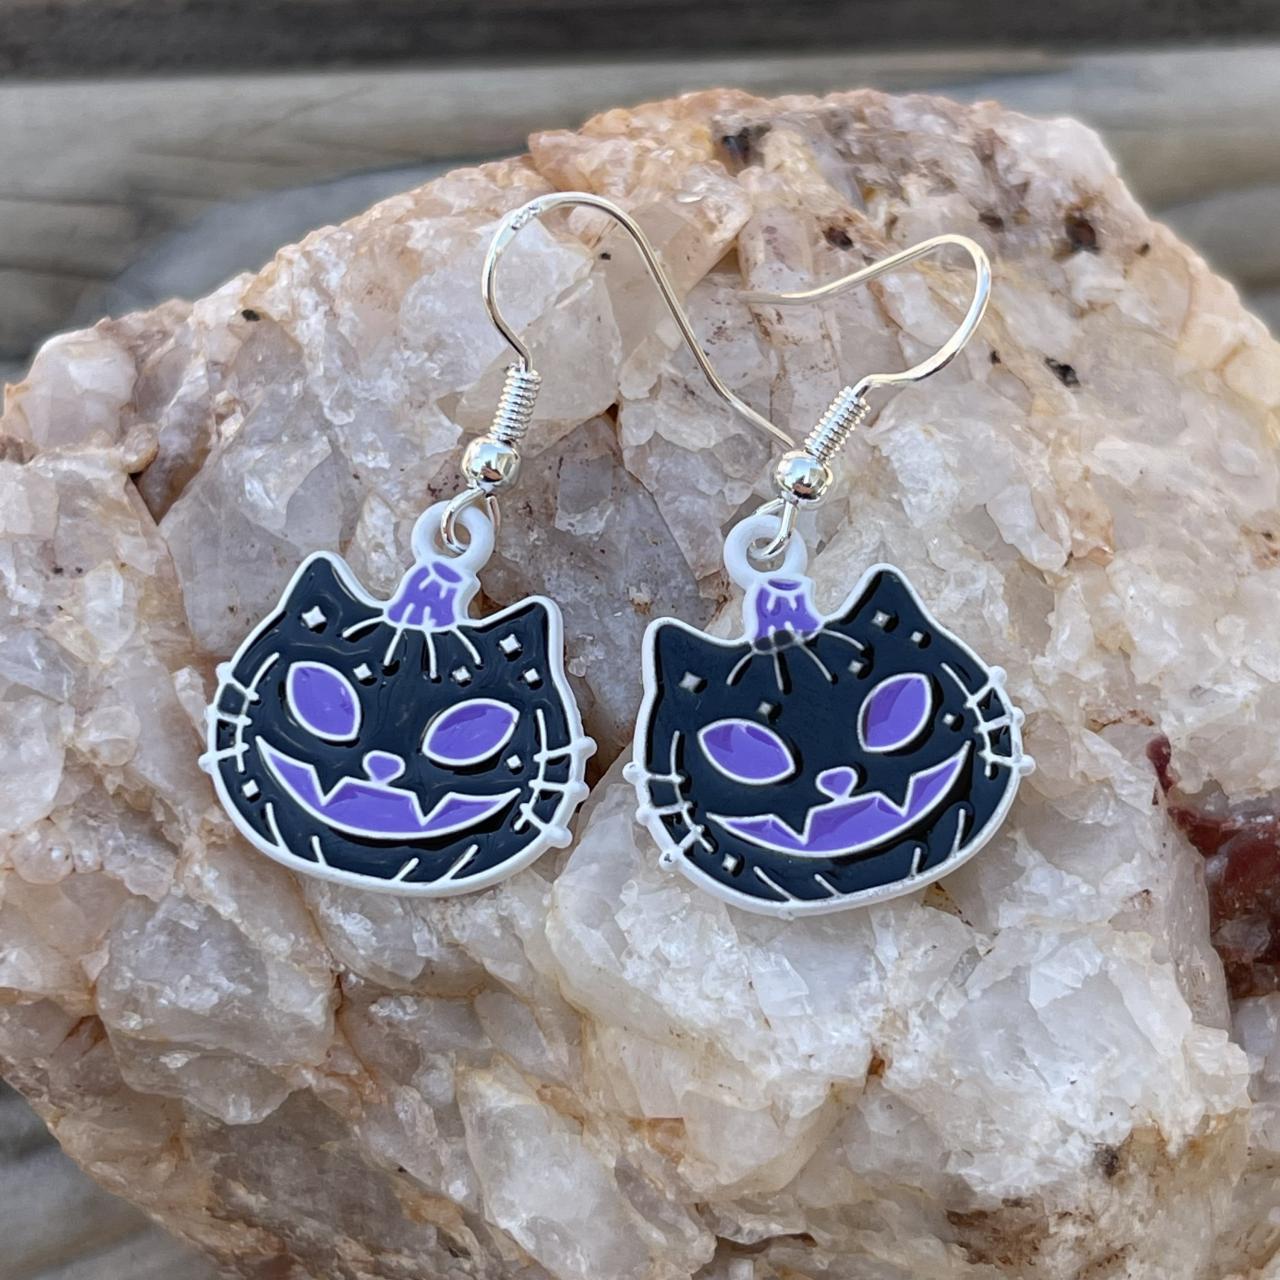 Black Cat Earrings, Halloween Accessories, Cat Jewelry, Black Pumpkin Earrings, Sterling Silver, Purple Pumpkin